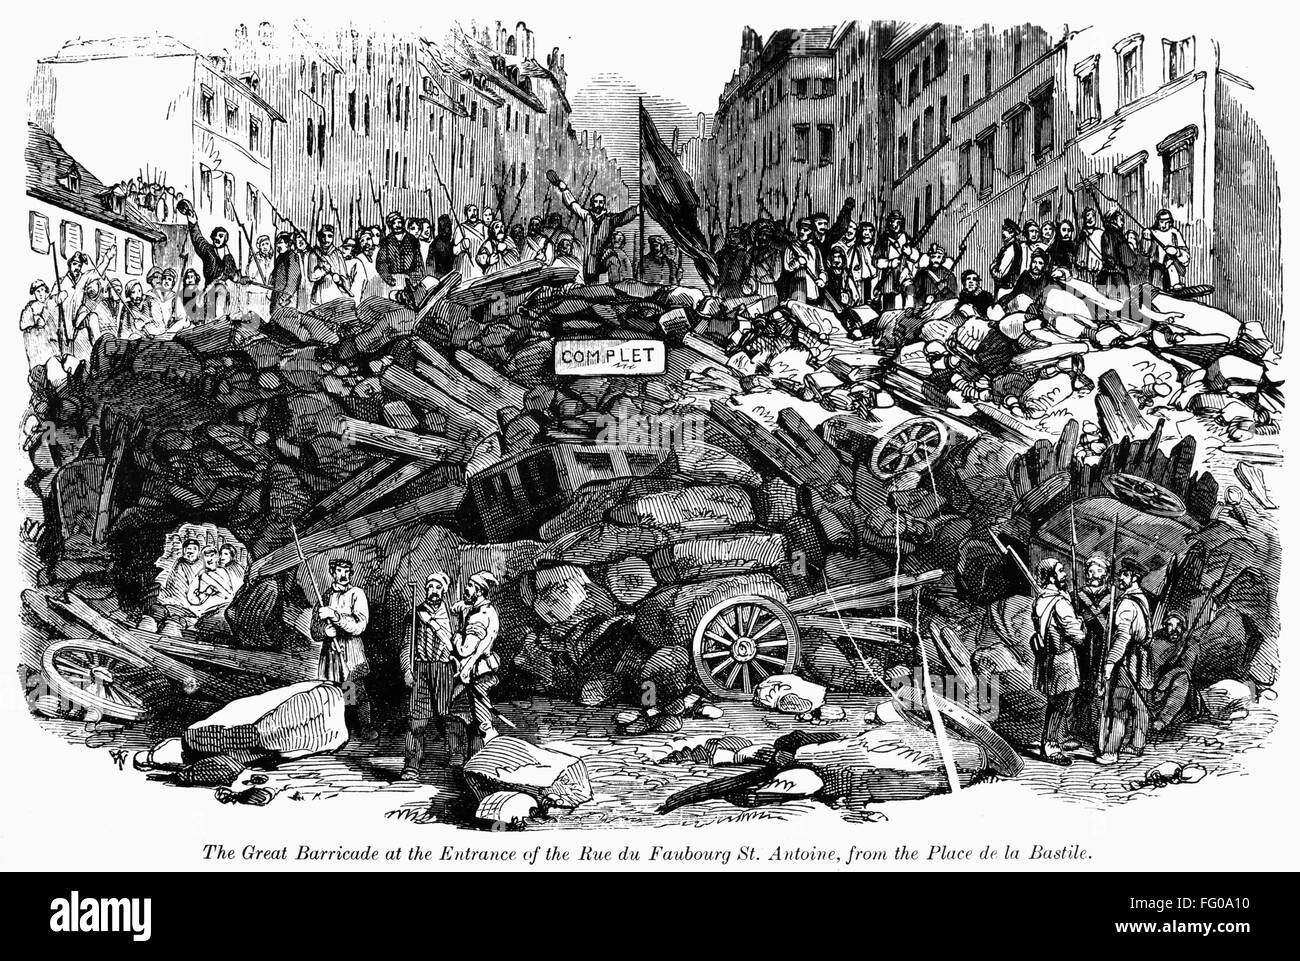 Революции в европе xix в. Баррикады во Франции 1848. Баррикады революции 1848 года во Франции. Баррикада 1848 года Париж. Революция в Германии 1848-1849.